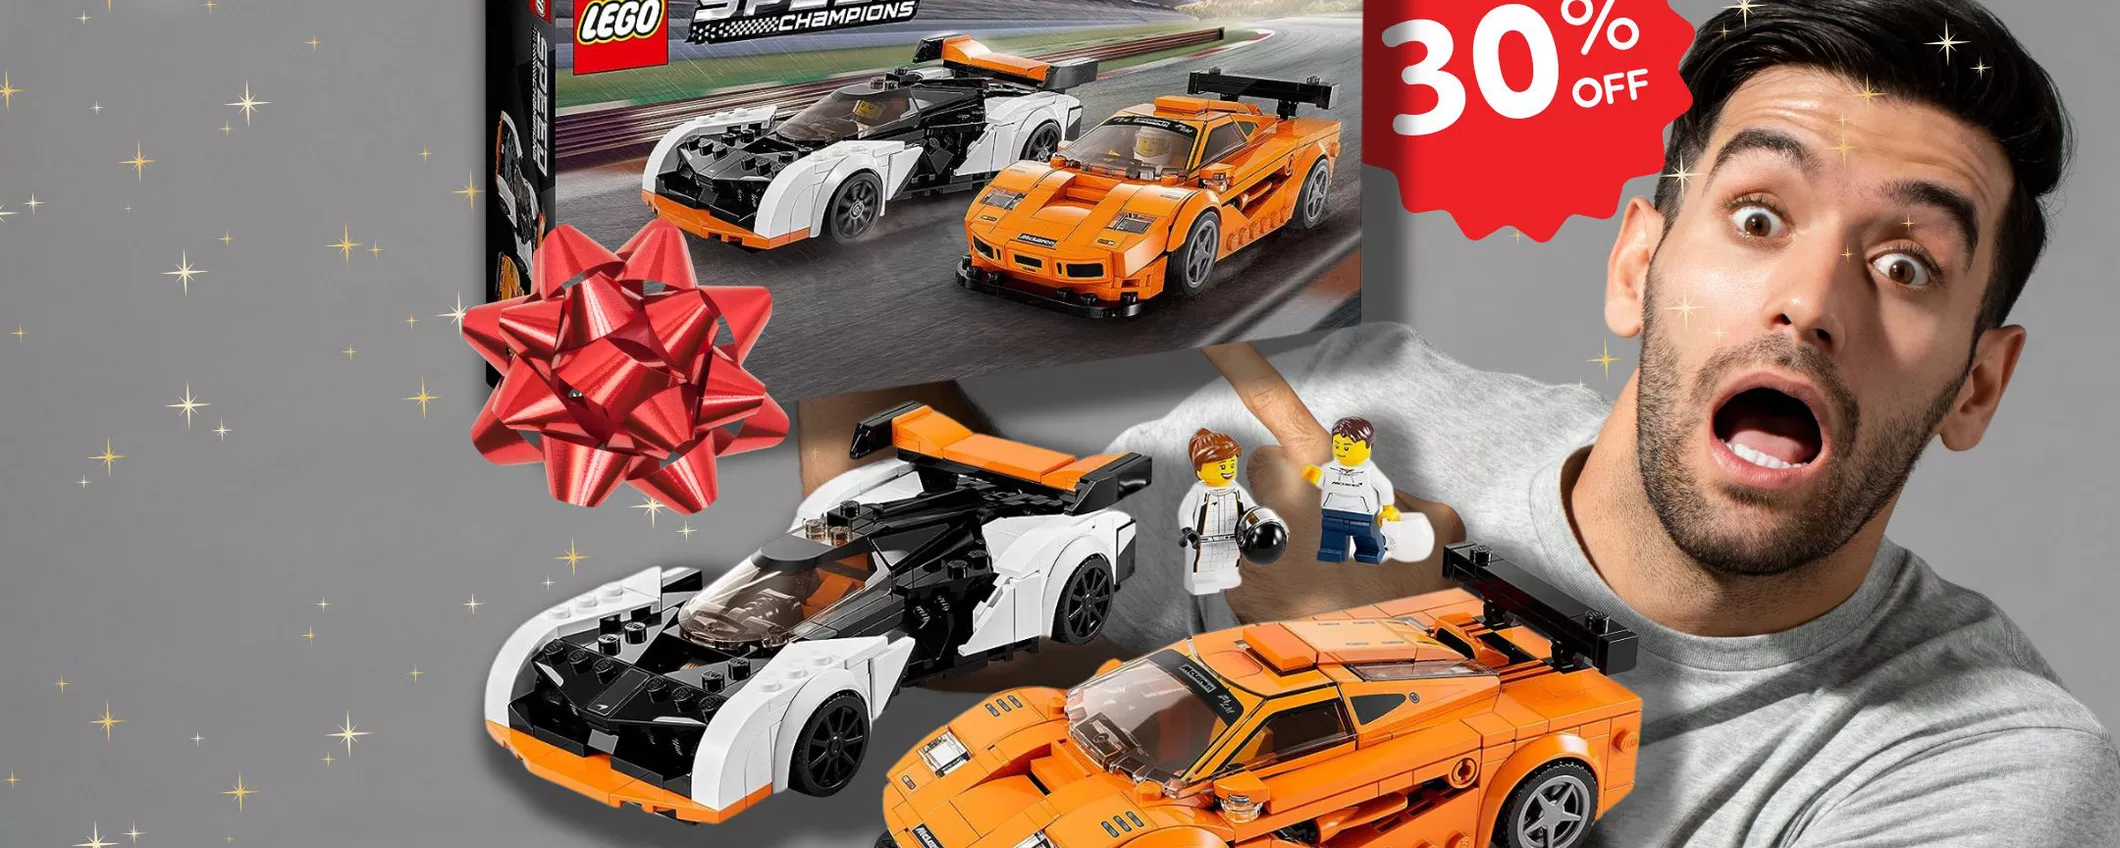 Arriva PRIMA DI NATALE: Set Lego McLaren in super sconto su Amazon!